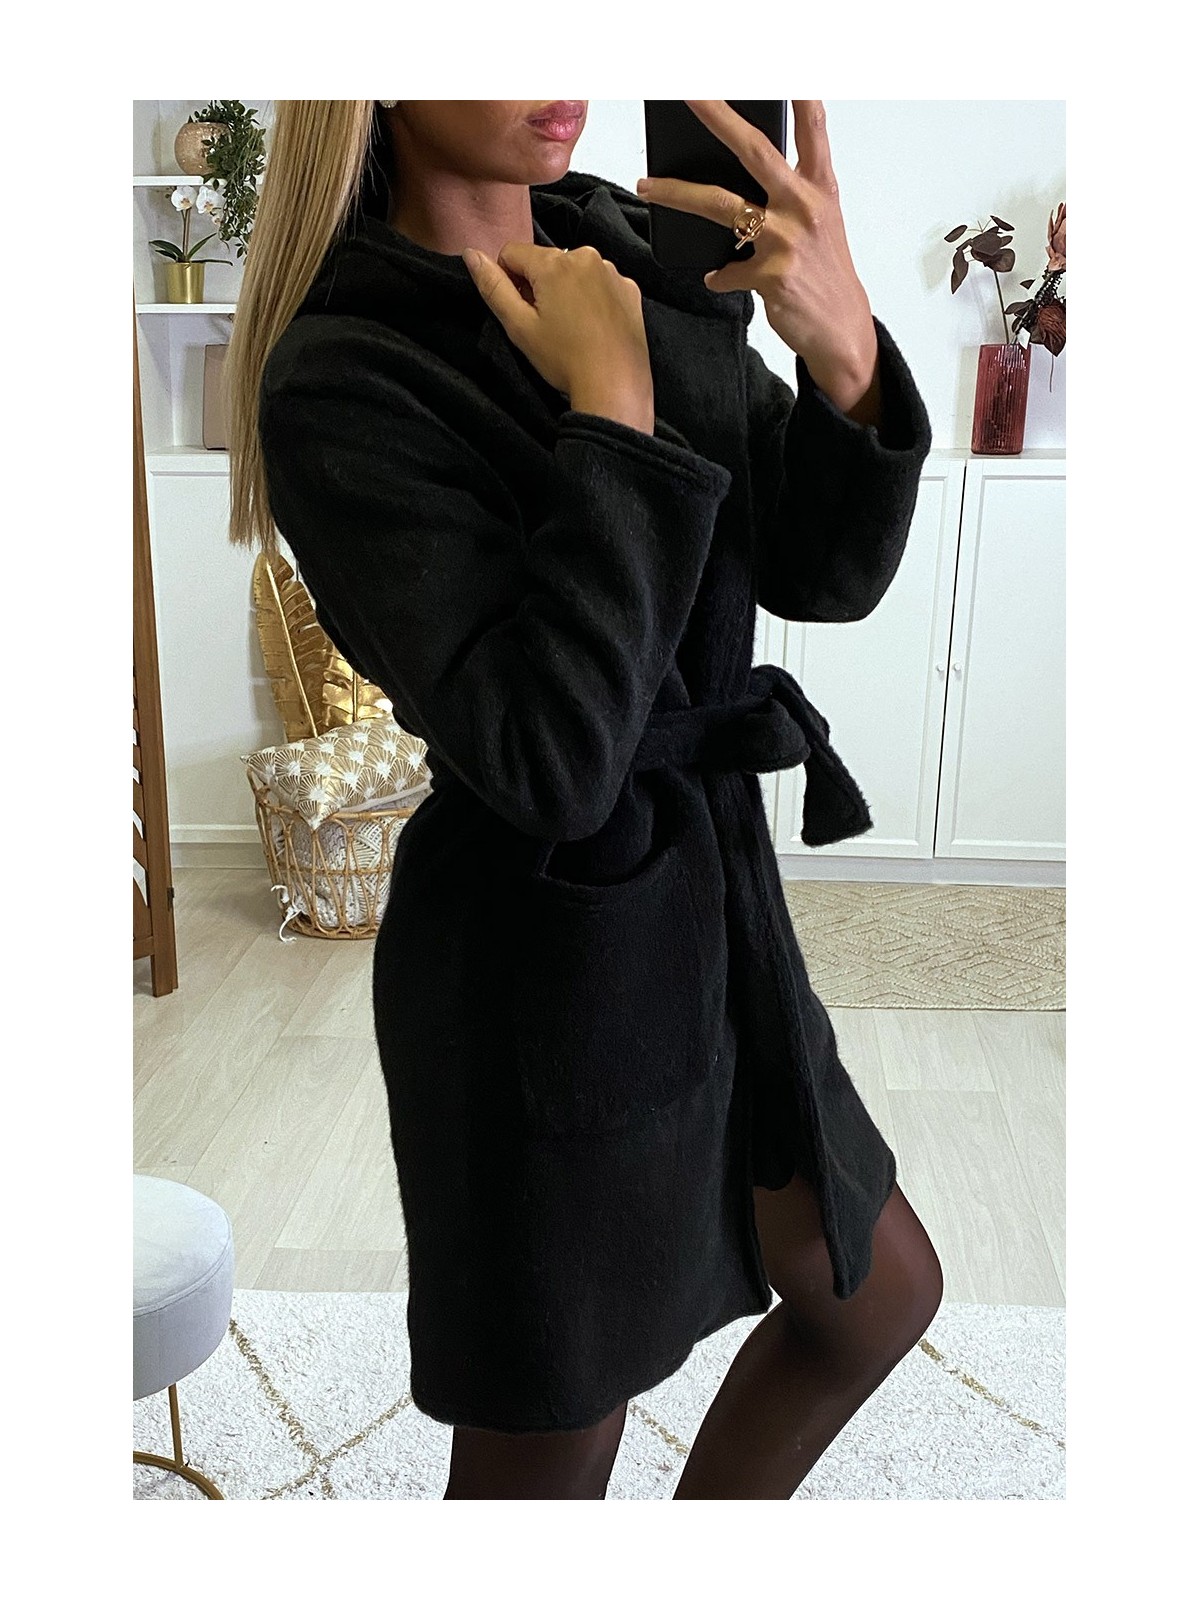 Veste dufteux en noir avec poches ceinture et capuche